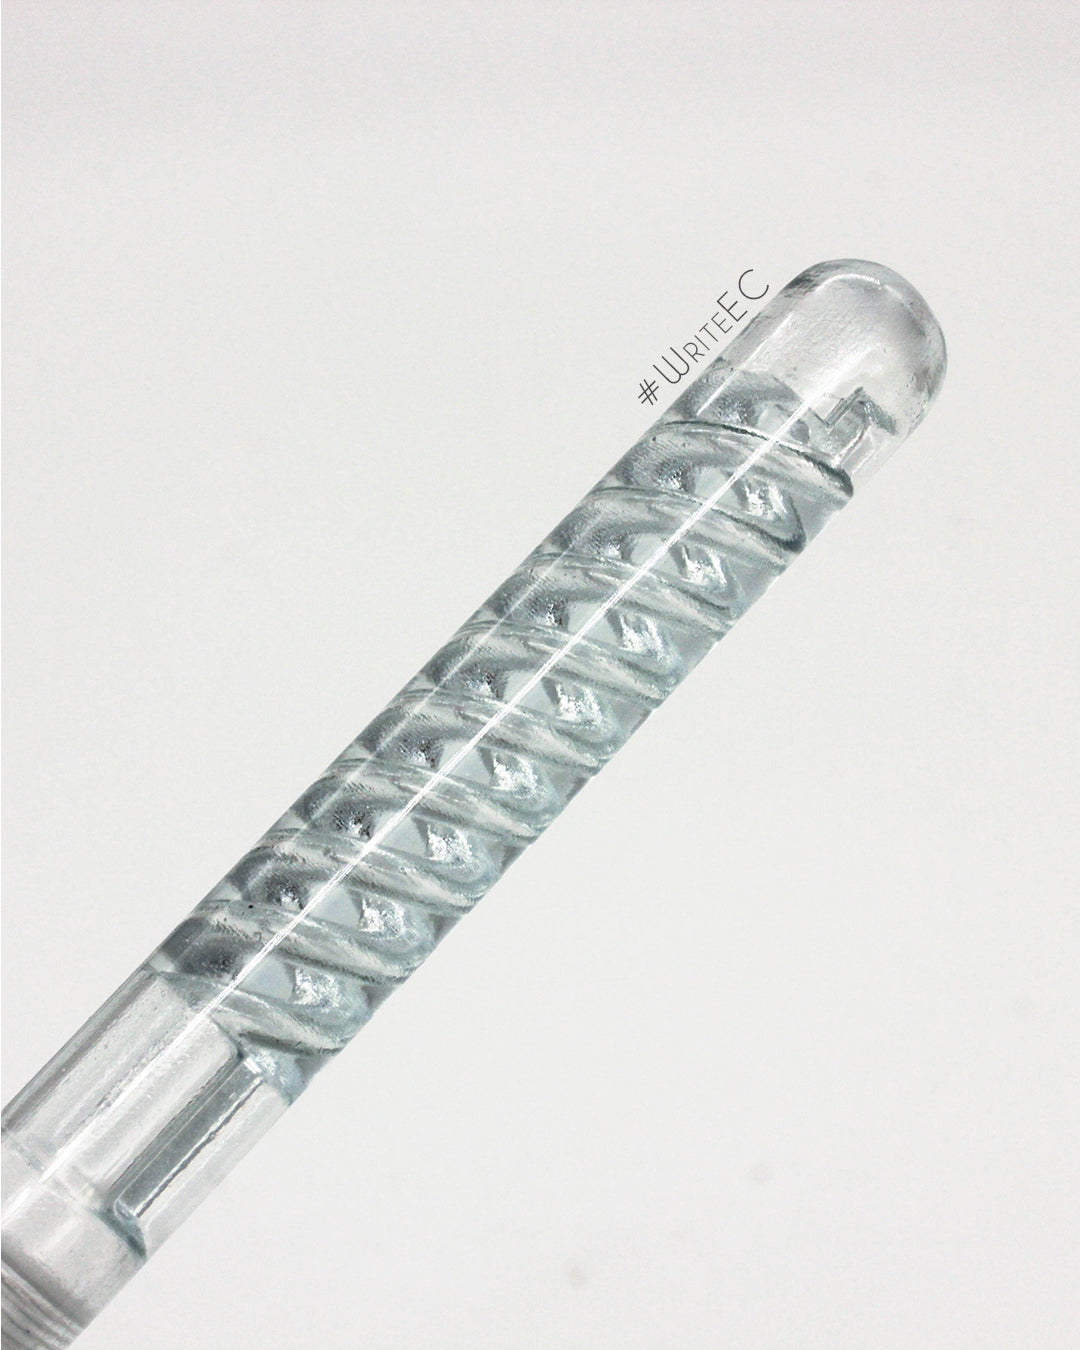 Additive Pens APC-6 Double Helix Pen